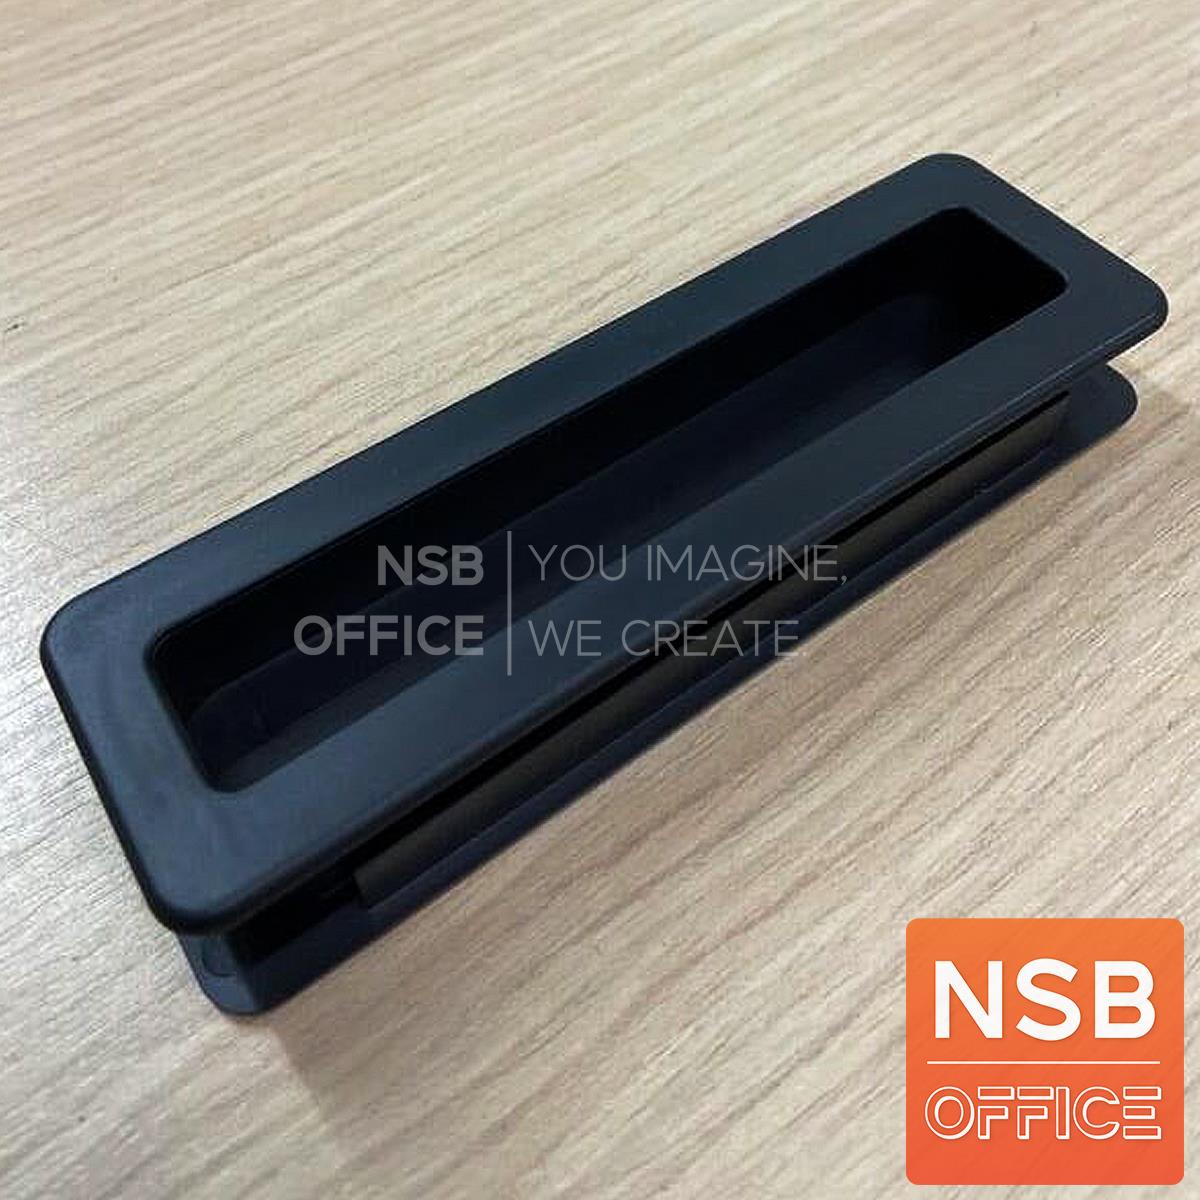 มือจับตู้หน้าบานไม้ รุ่น NSB-HAND 6  พลาสติกสีดำ